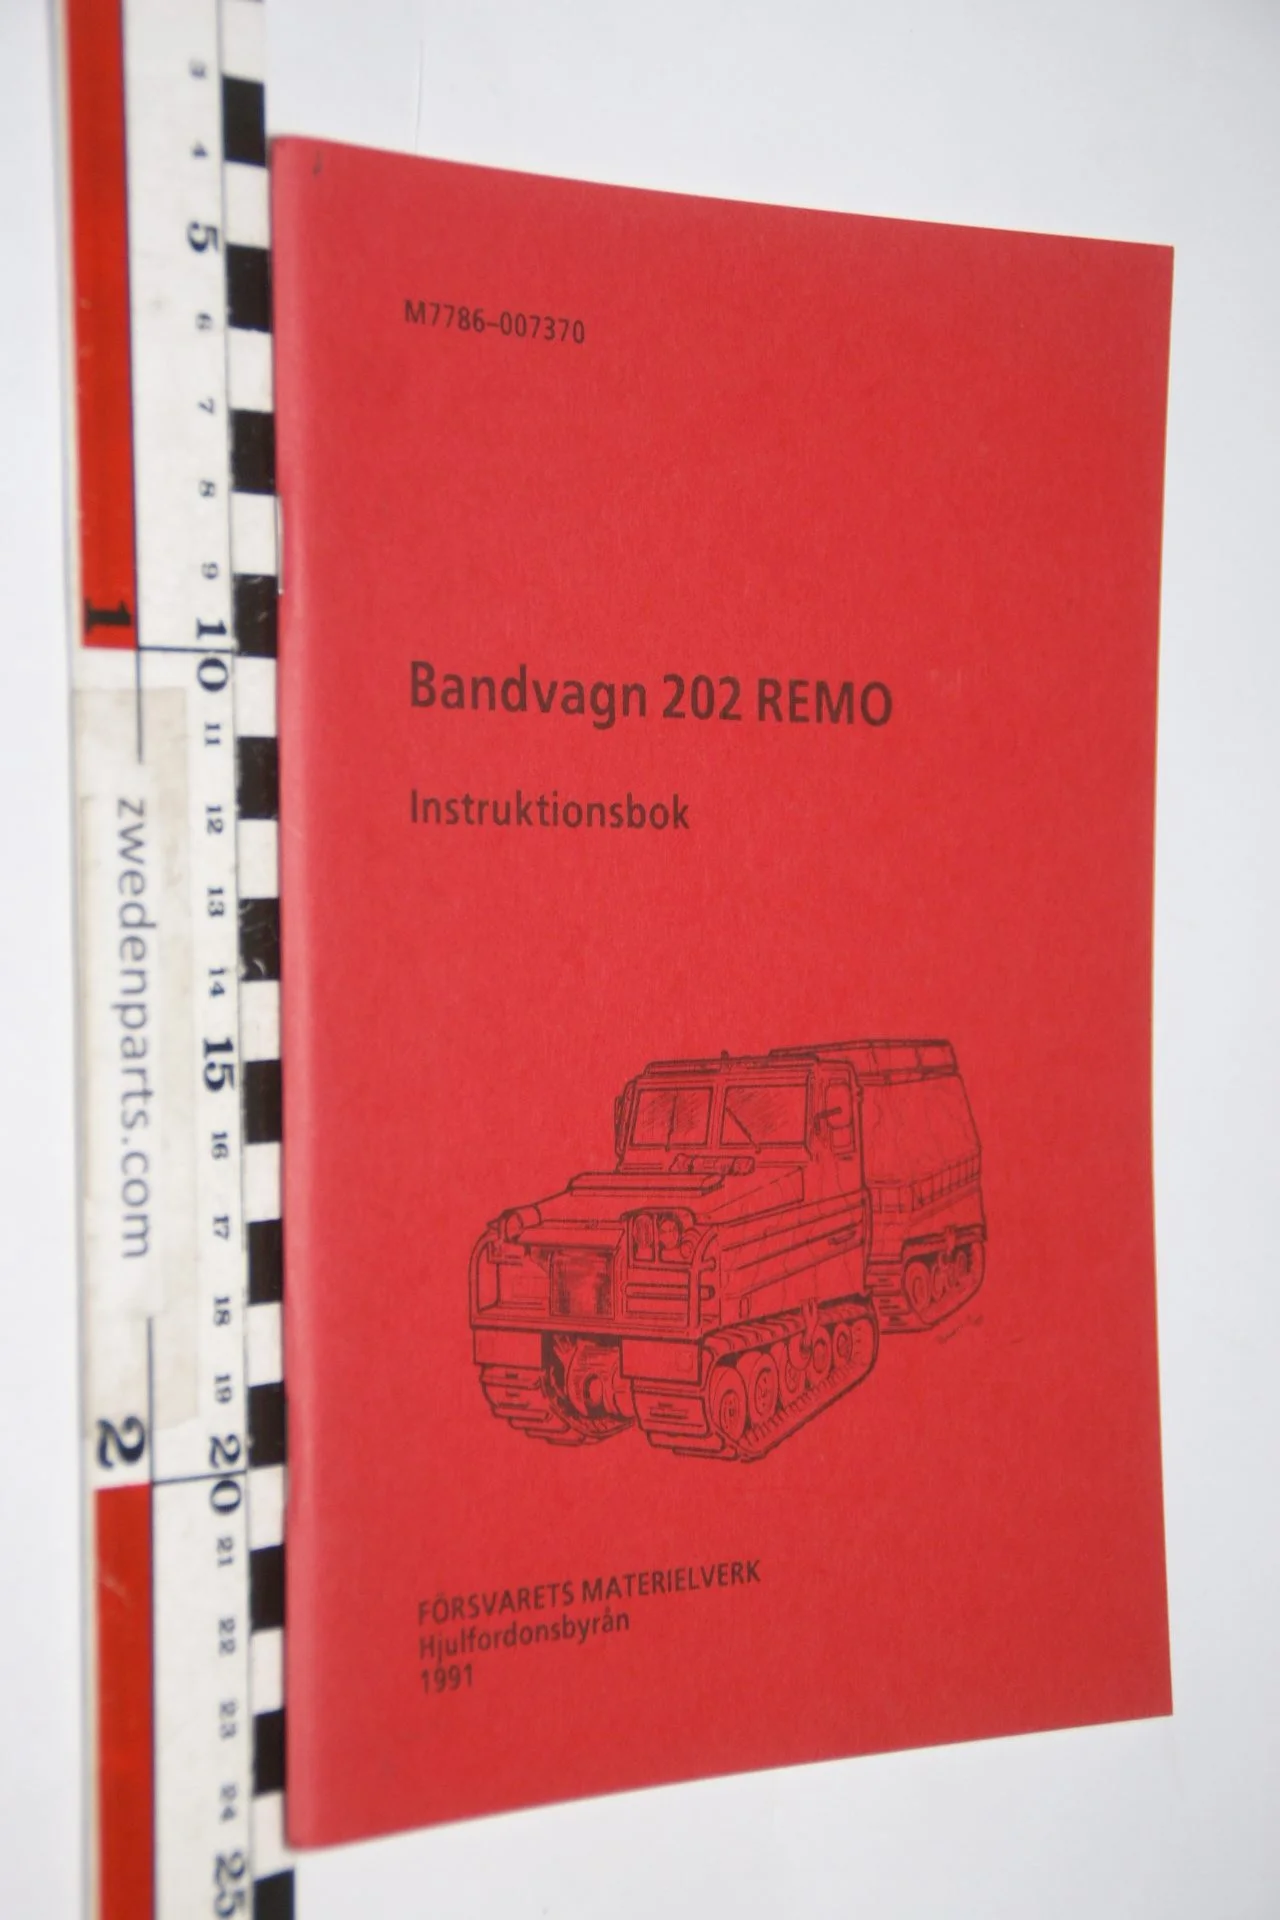 DSC07197 1986 origineel Volvo Bandvagn 202 Remo instruktionsbok  Svenskt M7786-007370